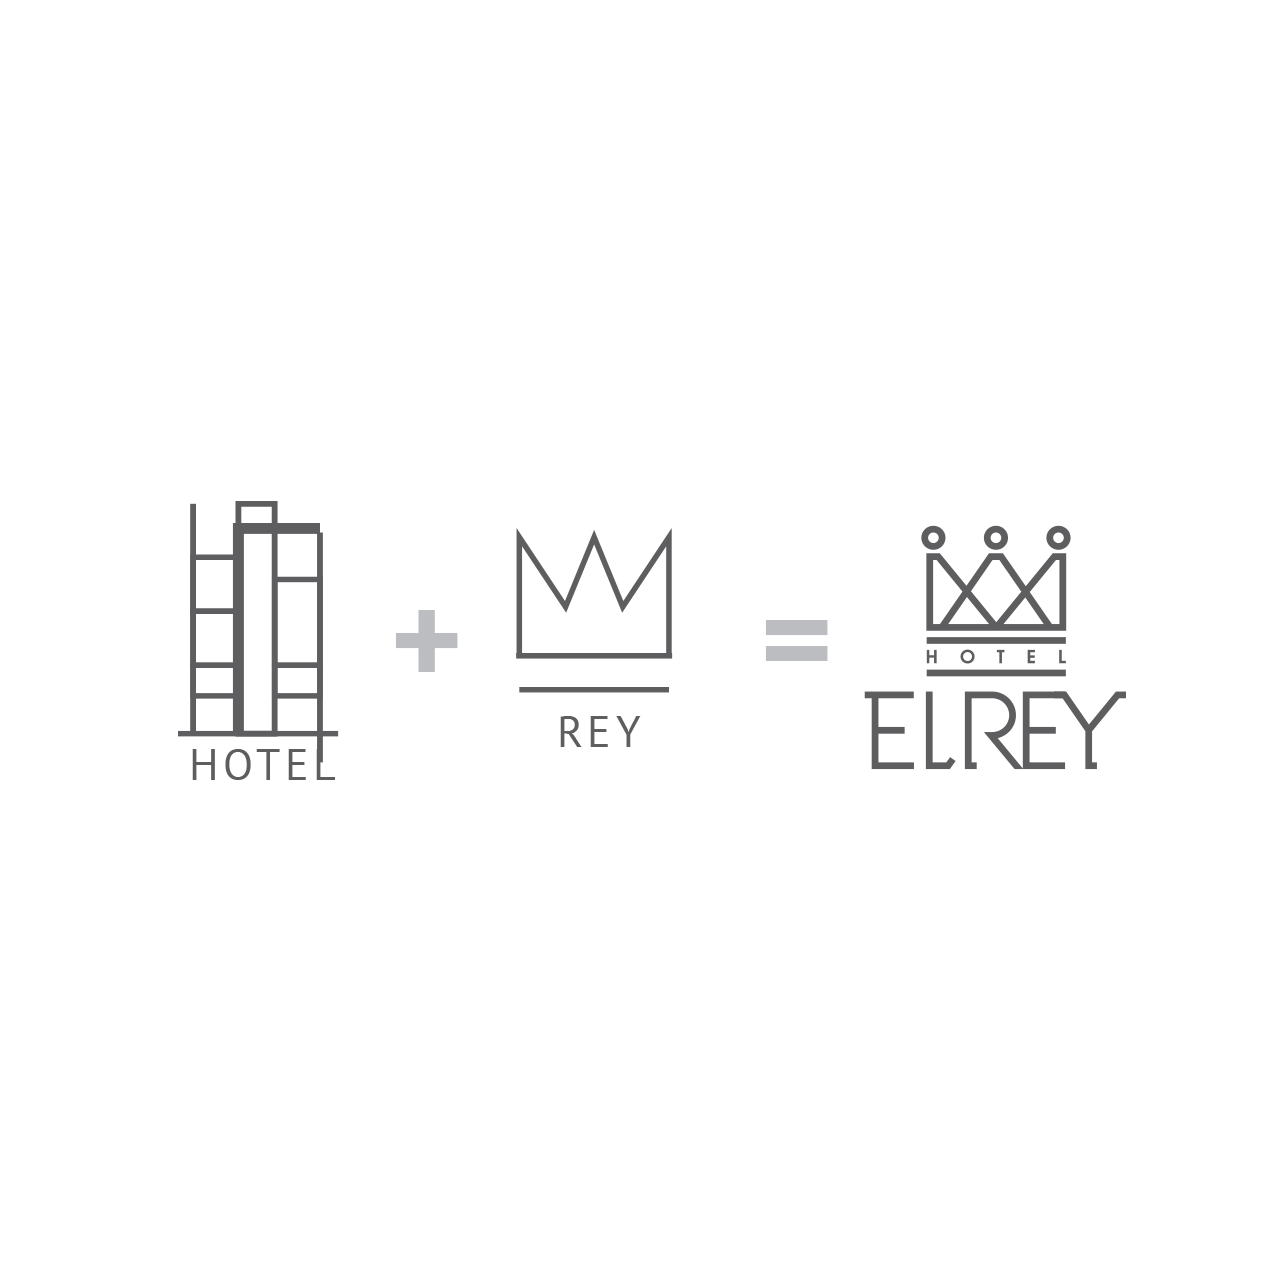 maquetado y proceso de diseño del logotipo para Hotel El Rey.